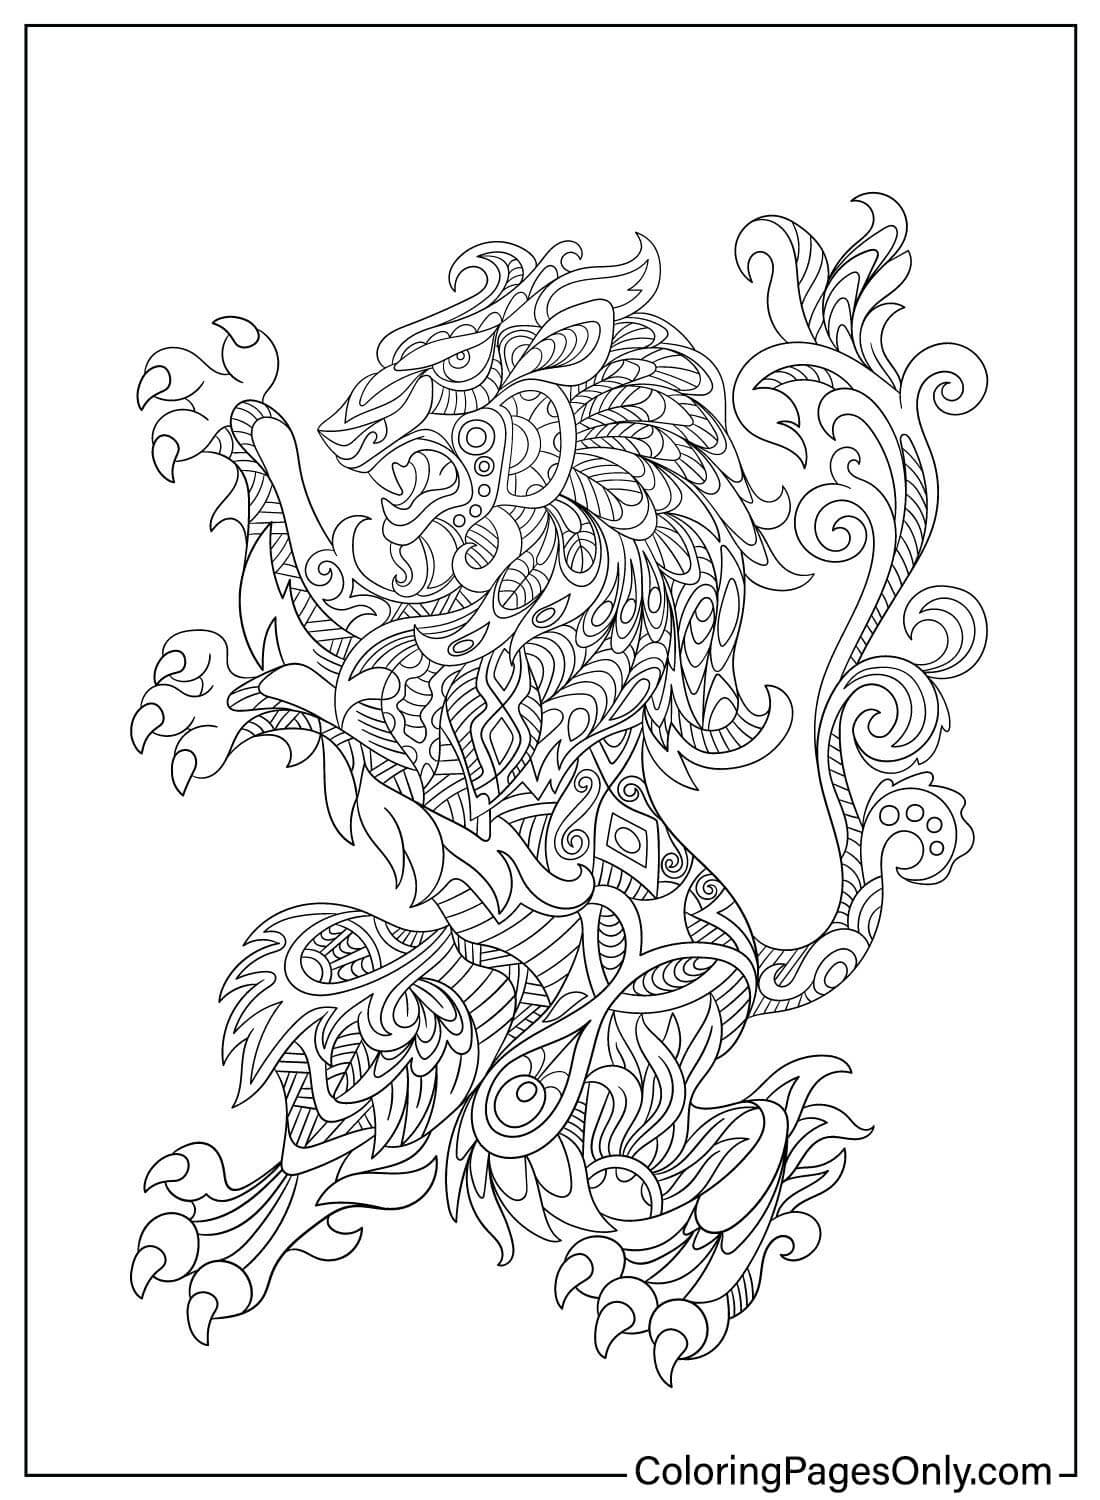 Página para colorir do símbolo da heráldica do leão do leão